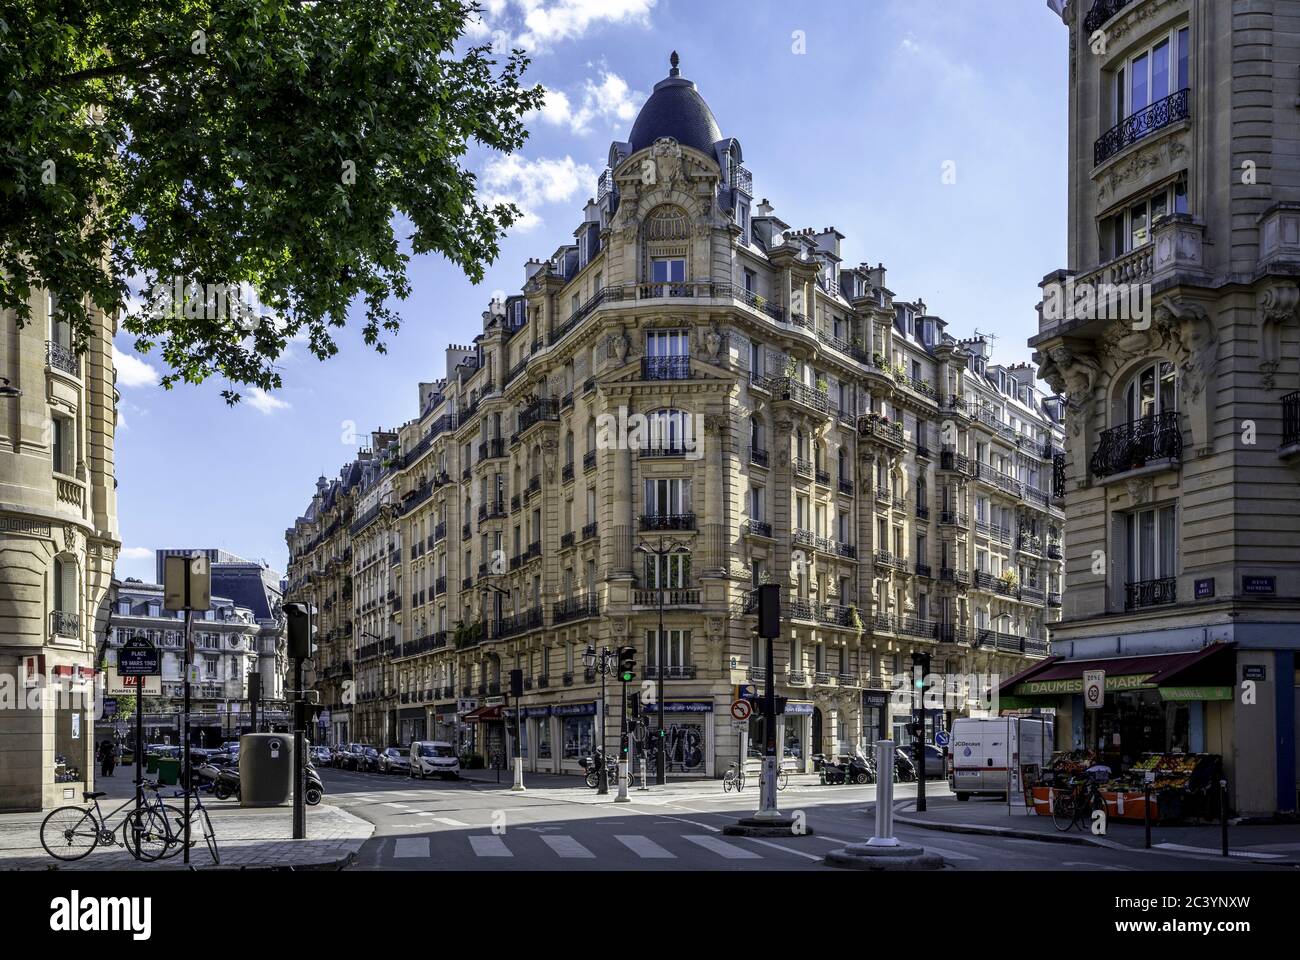 Paris, France - May 19, 2020: Typical Haussmann building in Paris near Gare de Lyon district Stock Photo